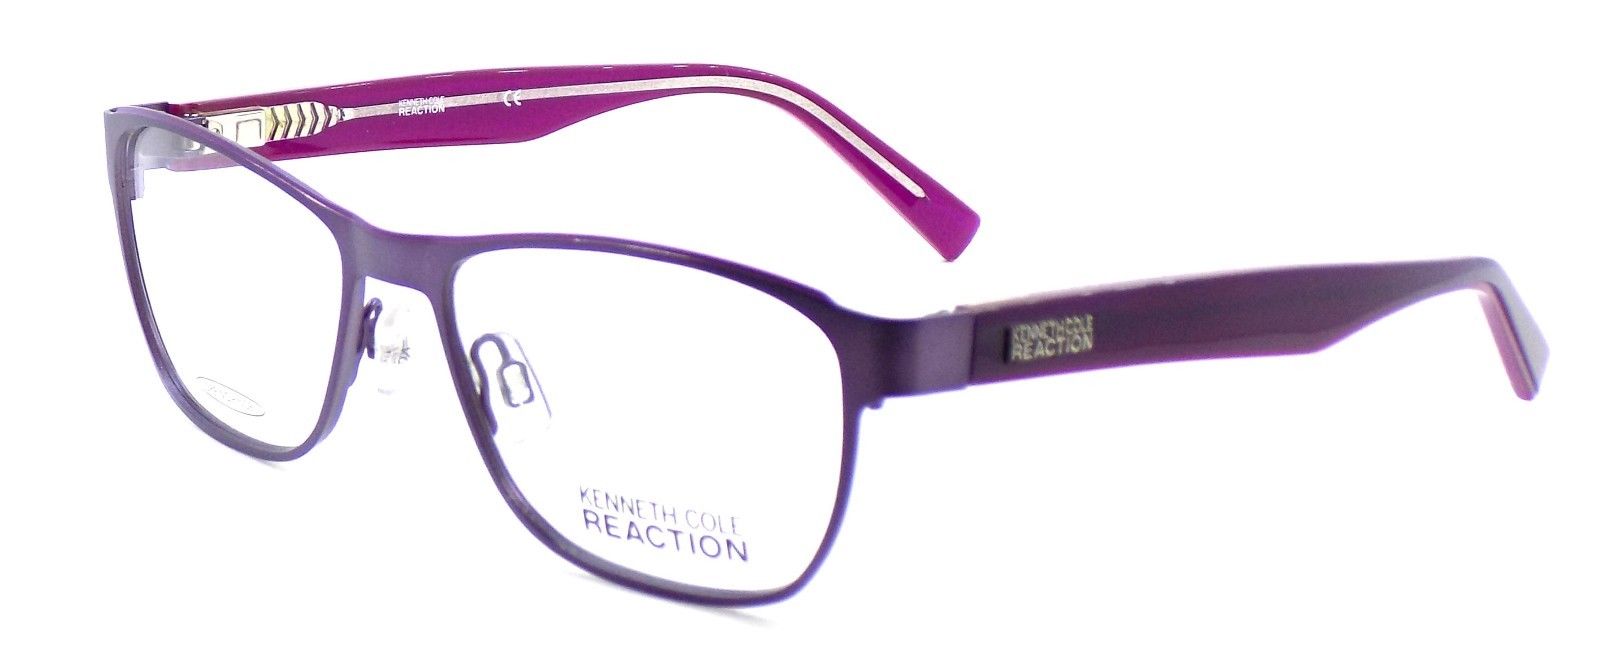 1-Kenneth Cole REACTION KC0768 082 Women's Eyeglasses 53-16-135 Matte Violet +CASE-664689662050-IKSpecs